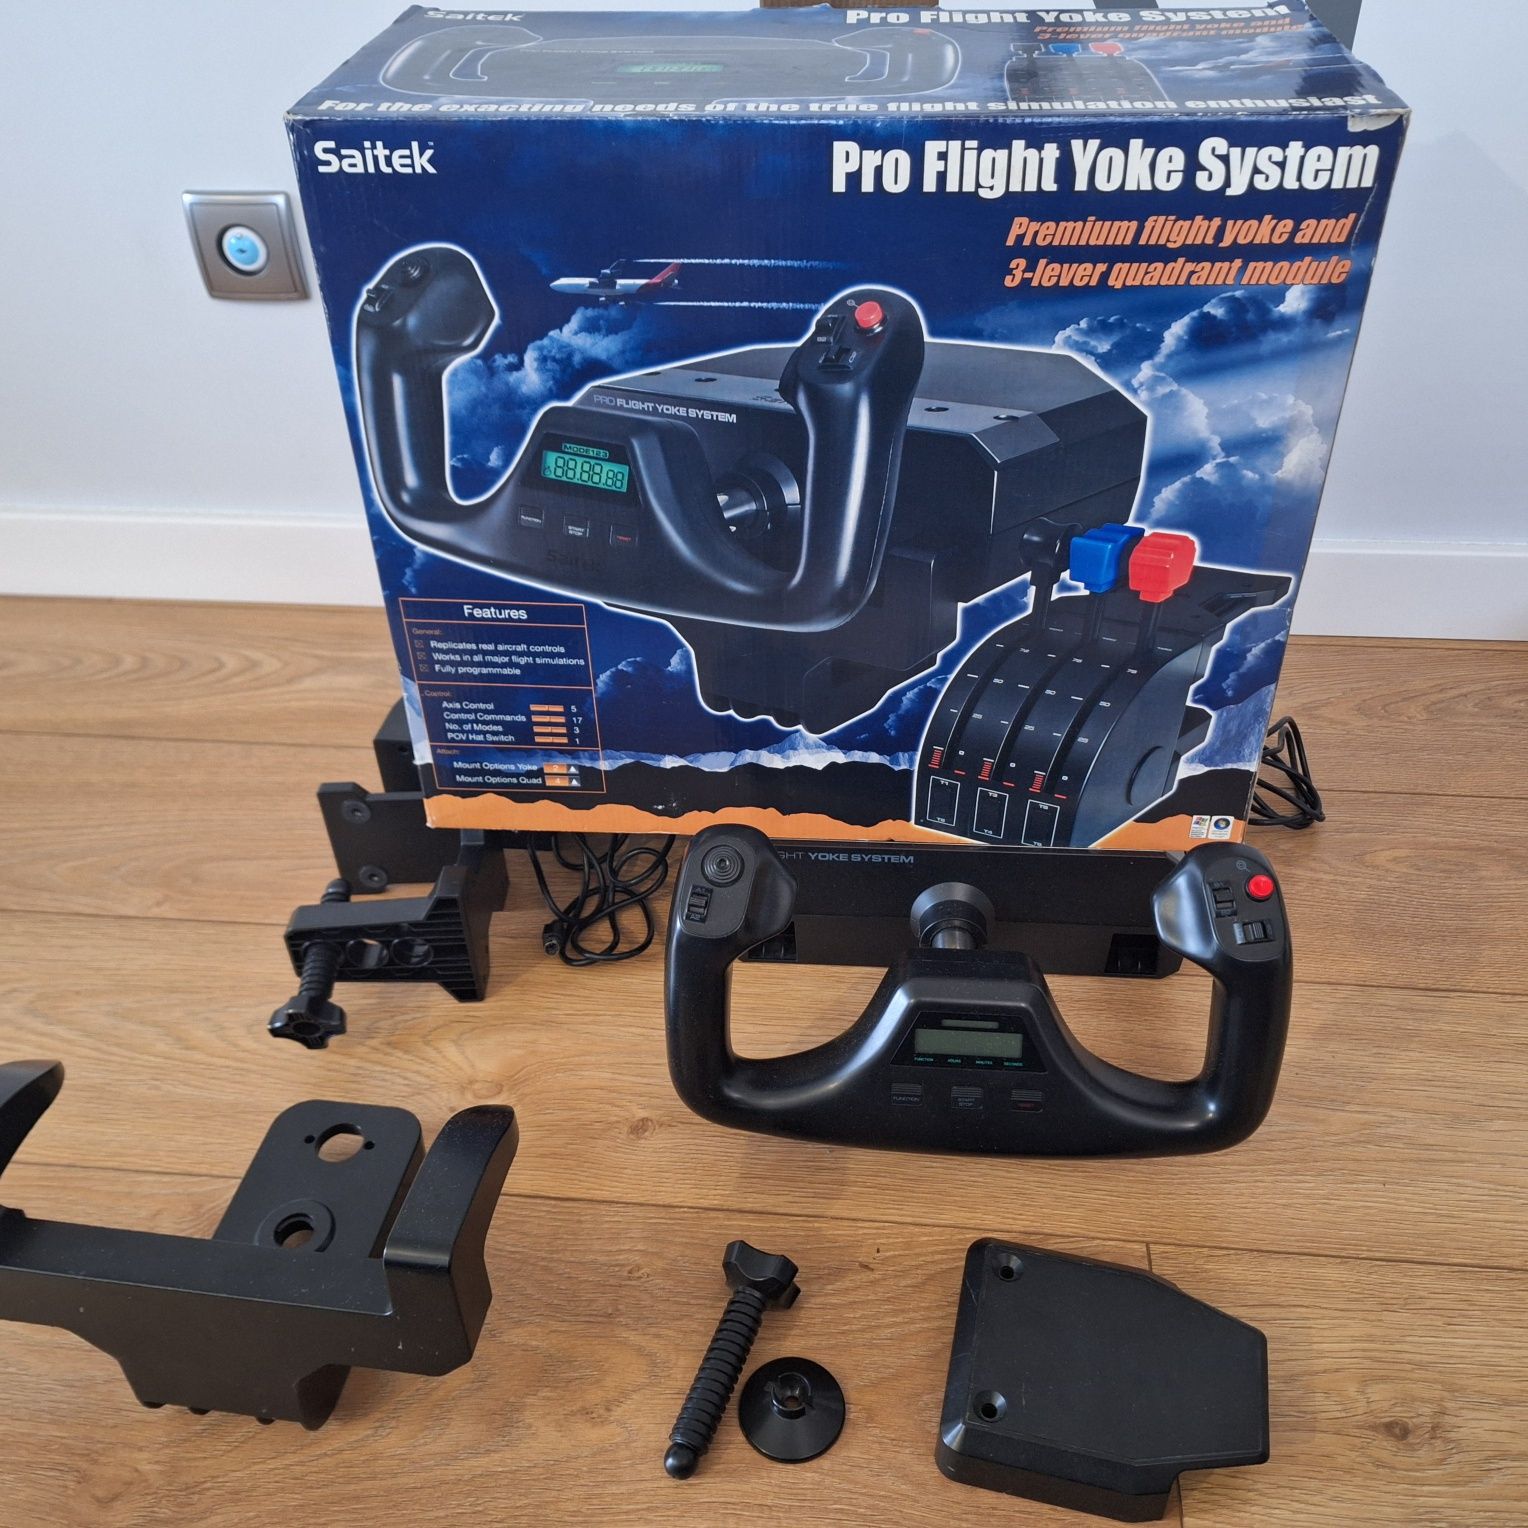 Saitek Pro Flight Yoke System